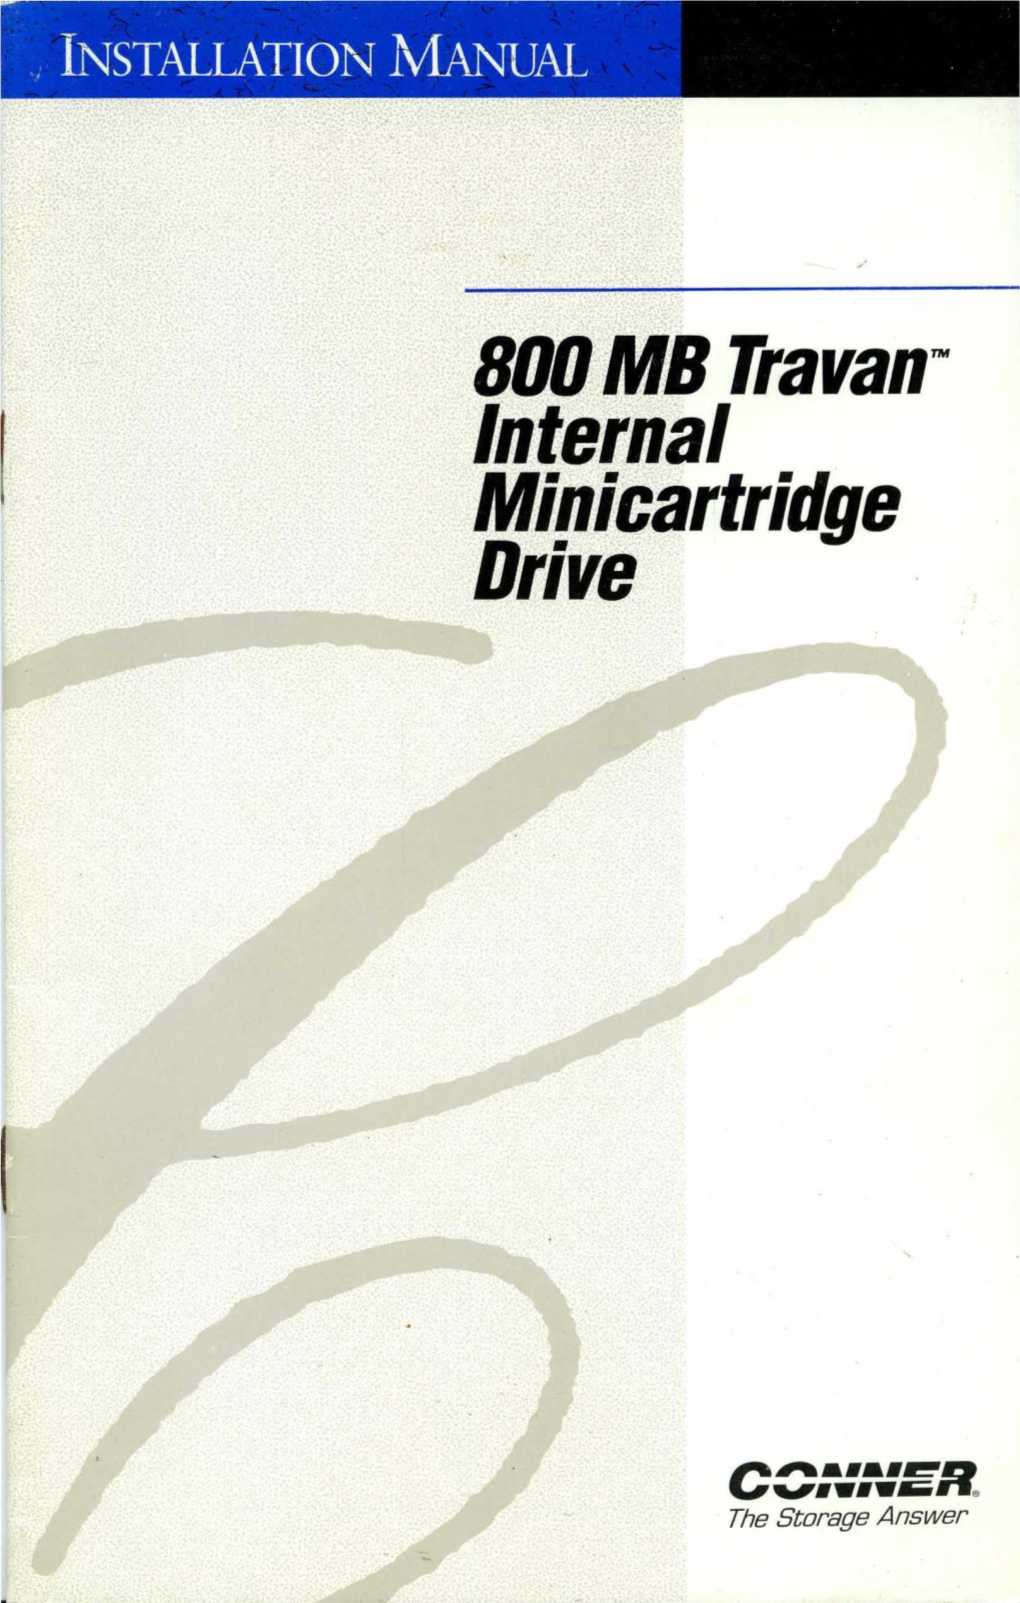 BOO MB Travan™ Internal Minicartridge Drive